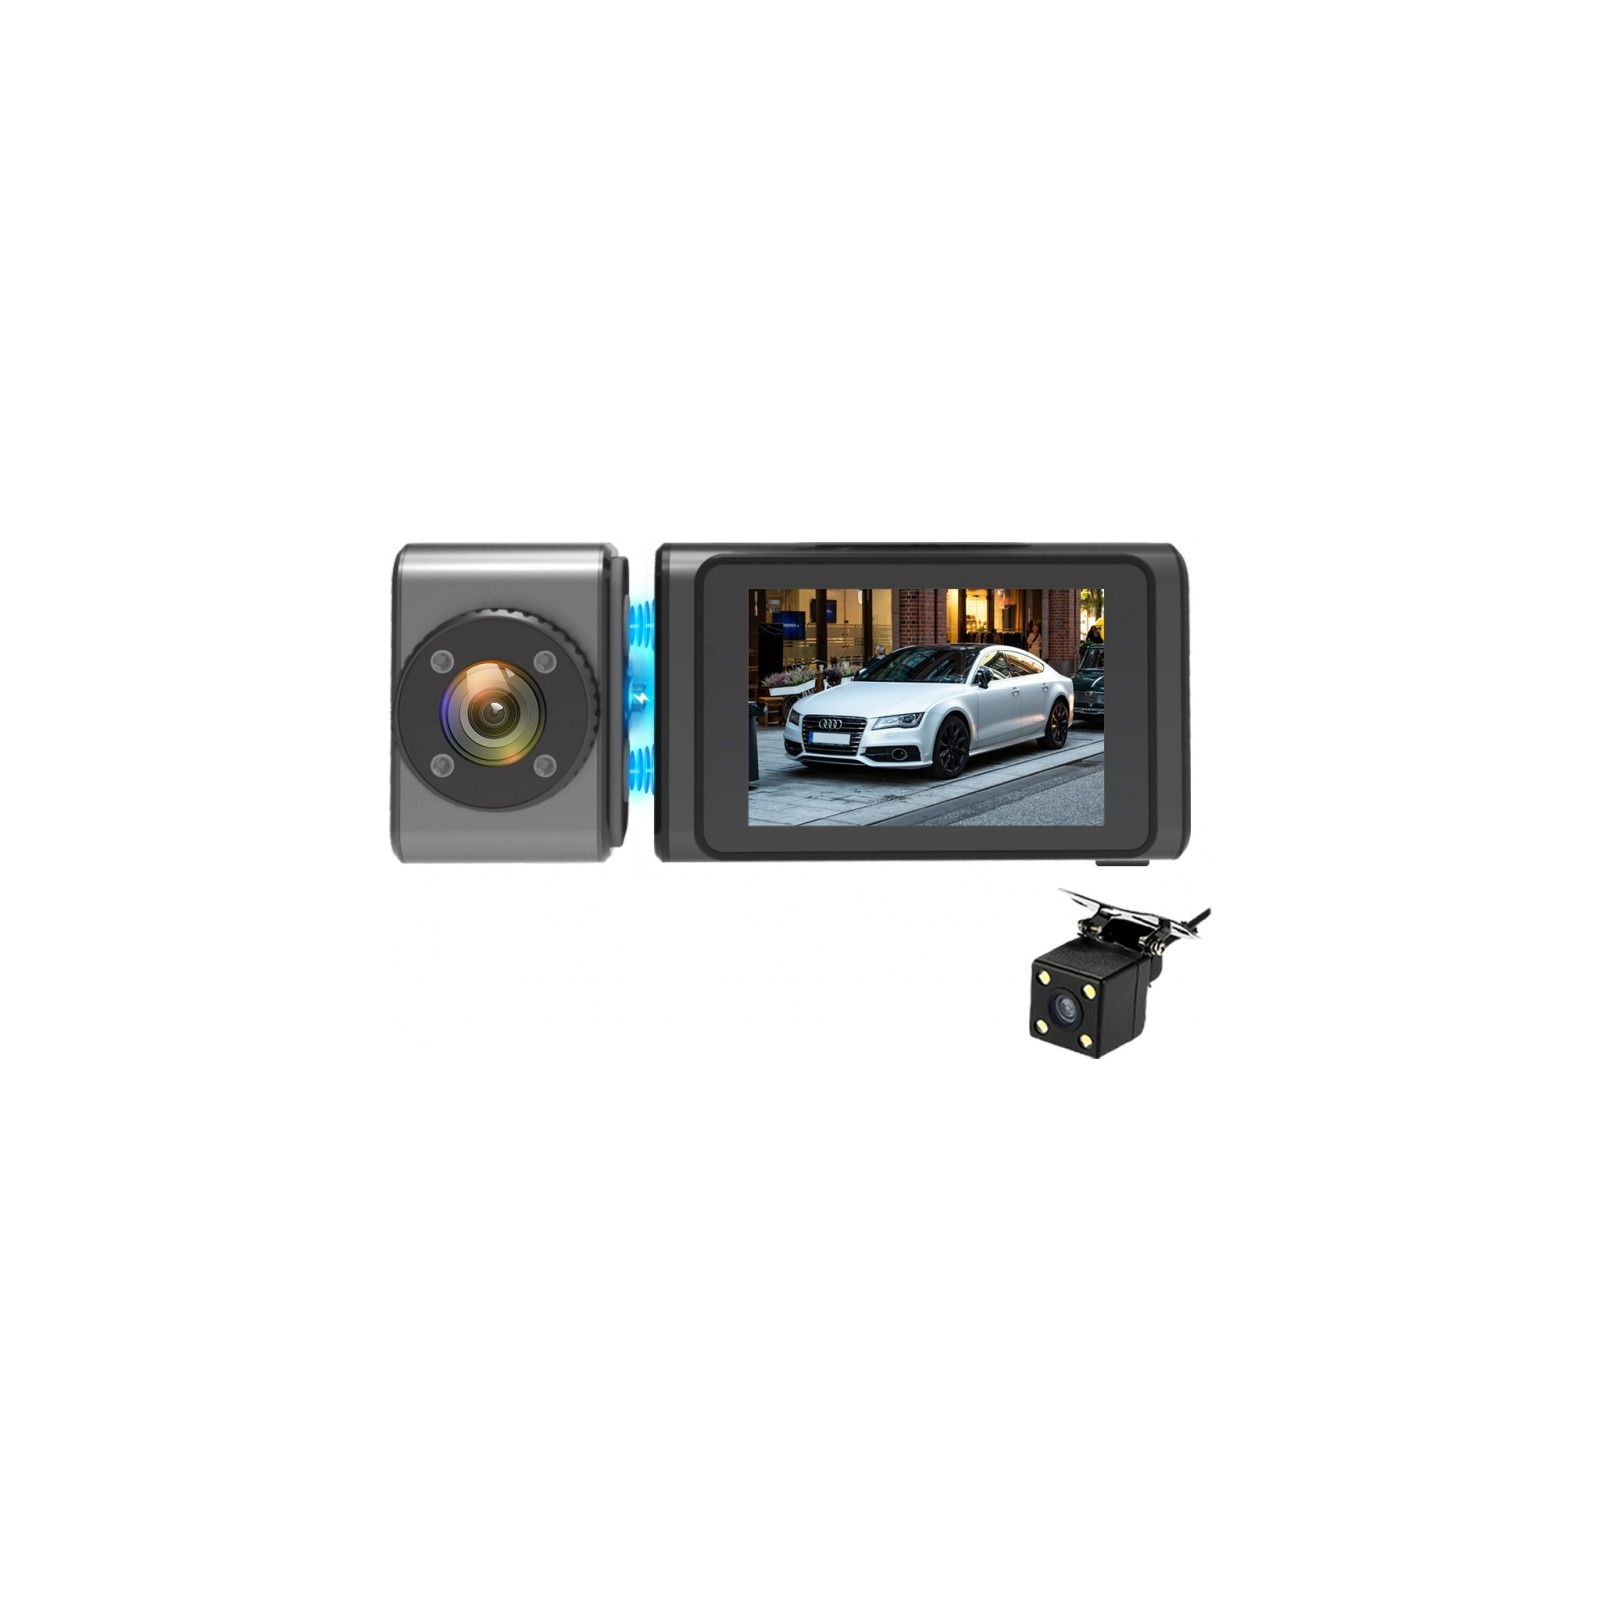 Видеорегистратор Aspiring Alibi 9 GPS, 3 Cameras, Speedcam (Aspiring Alibi 9 GPS, 3 Cameras, Speedcam) изображение 7